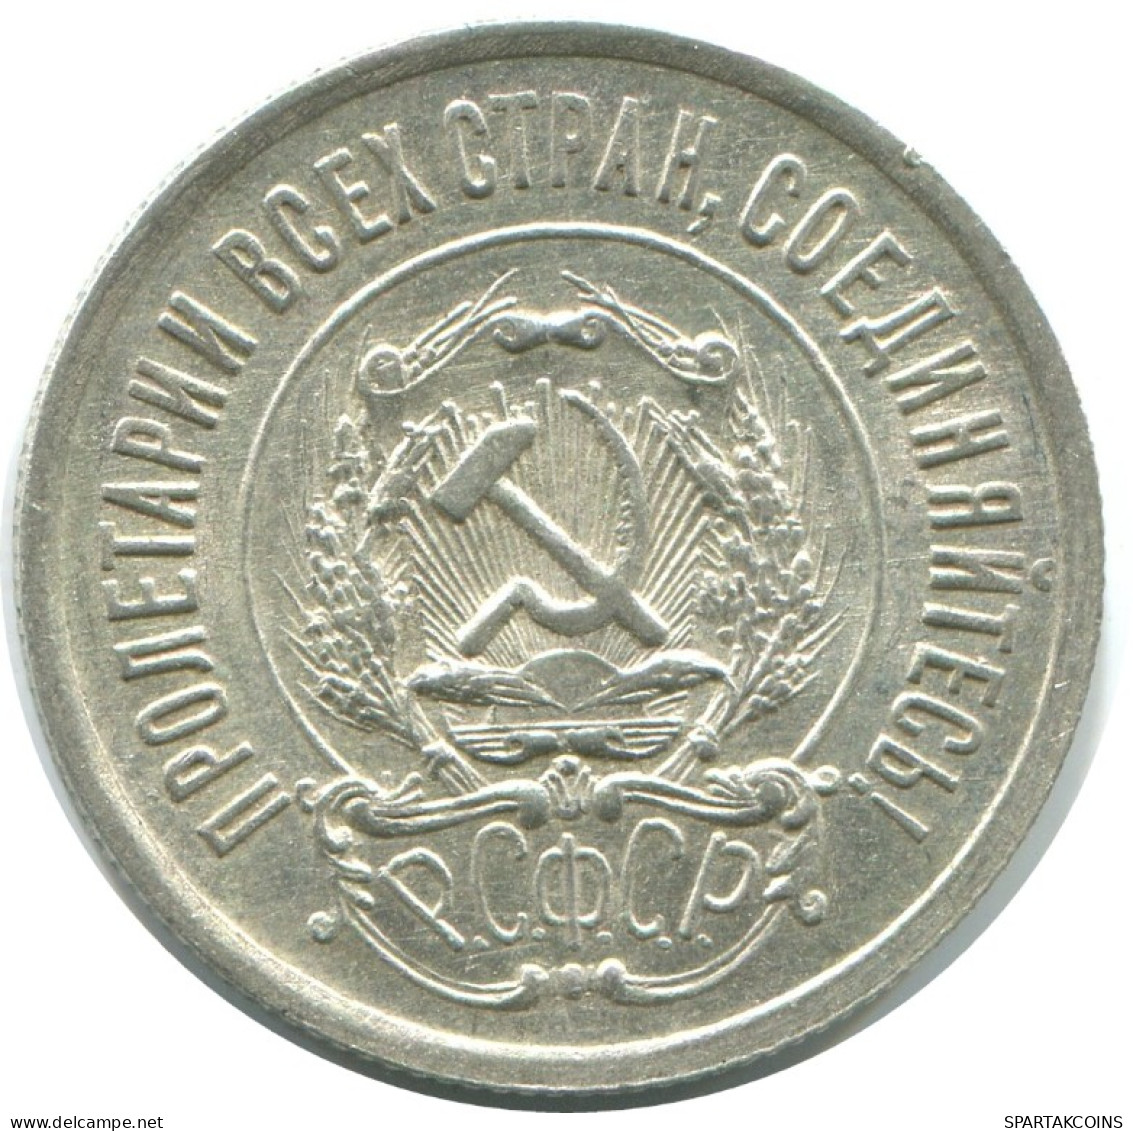 20 KOPEKS 1923 RUSSLAND RUSSIA RSFSR SILBER Münze HIGH GRADE #AF563.4.D.A - Rusia